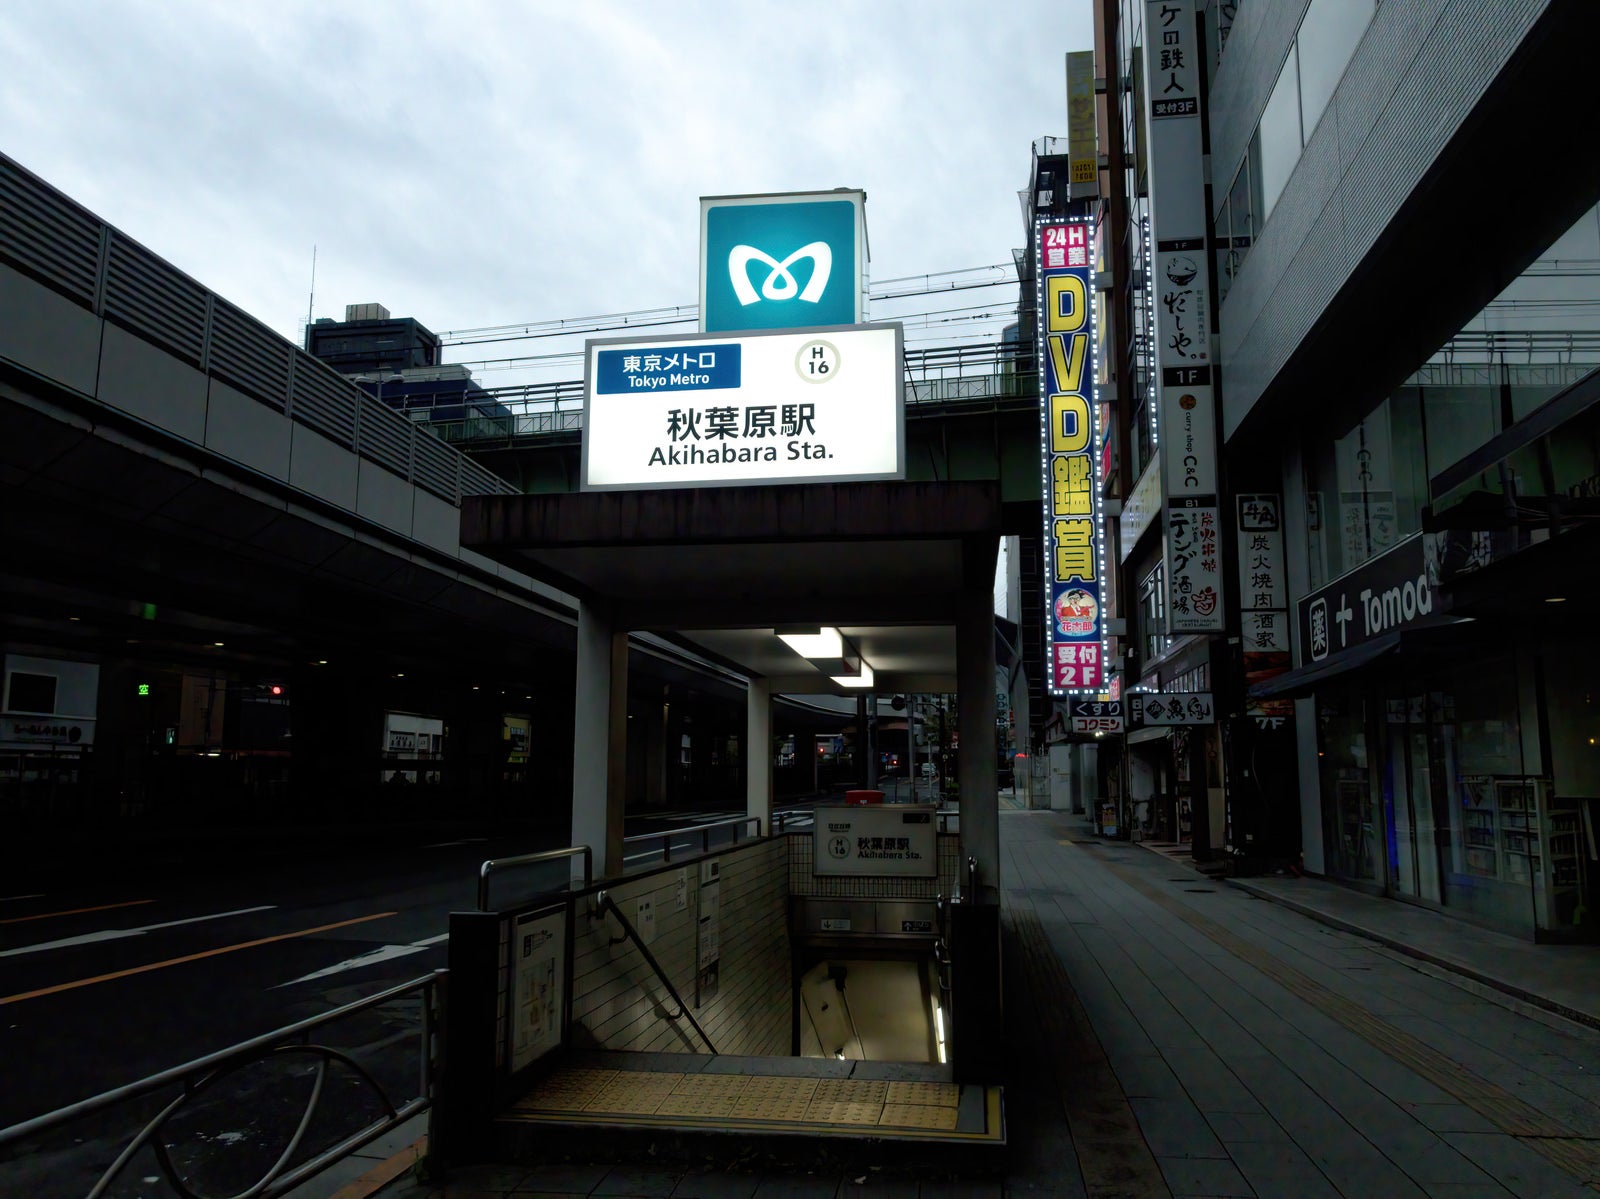 「東京メトロ秋葉原駅へと続く入口」の写真